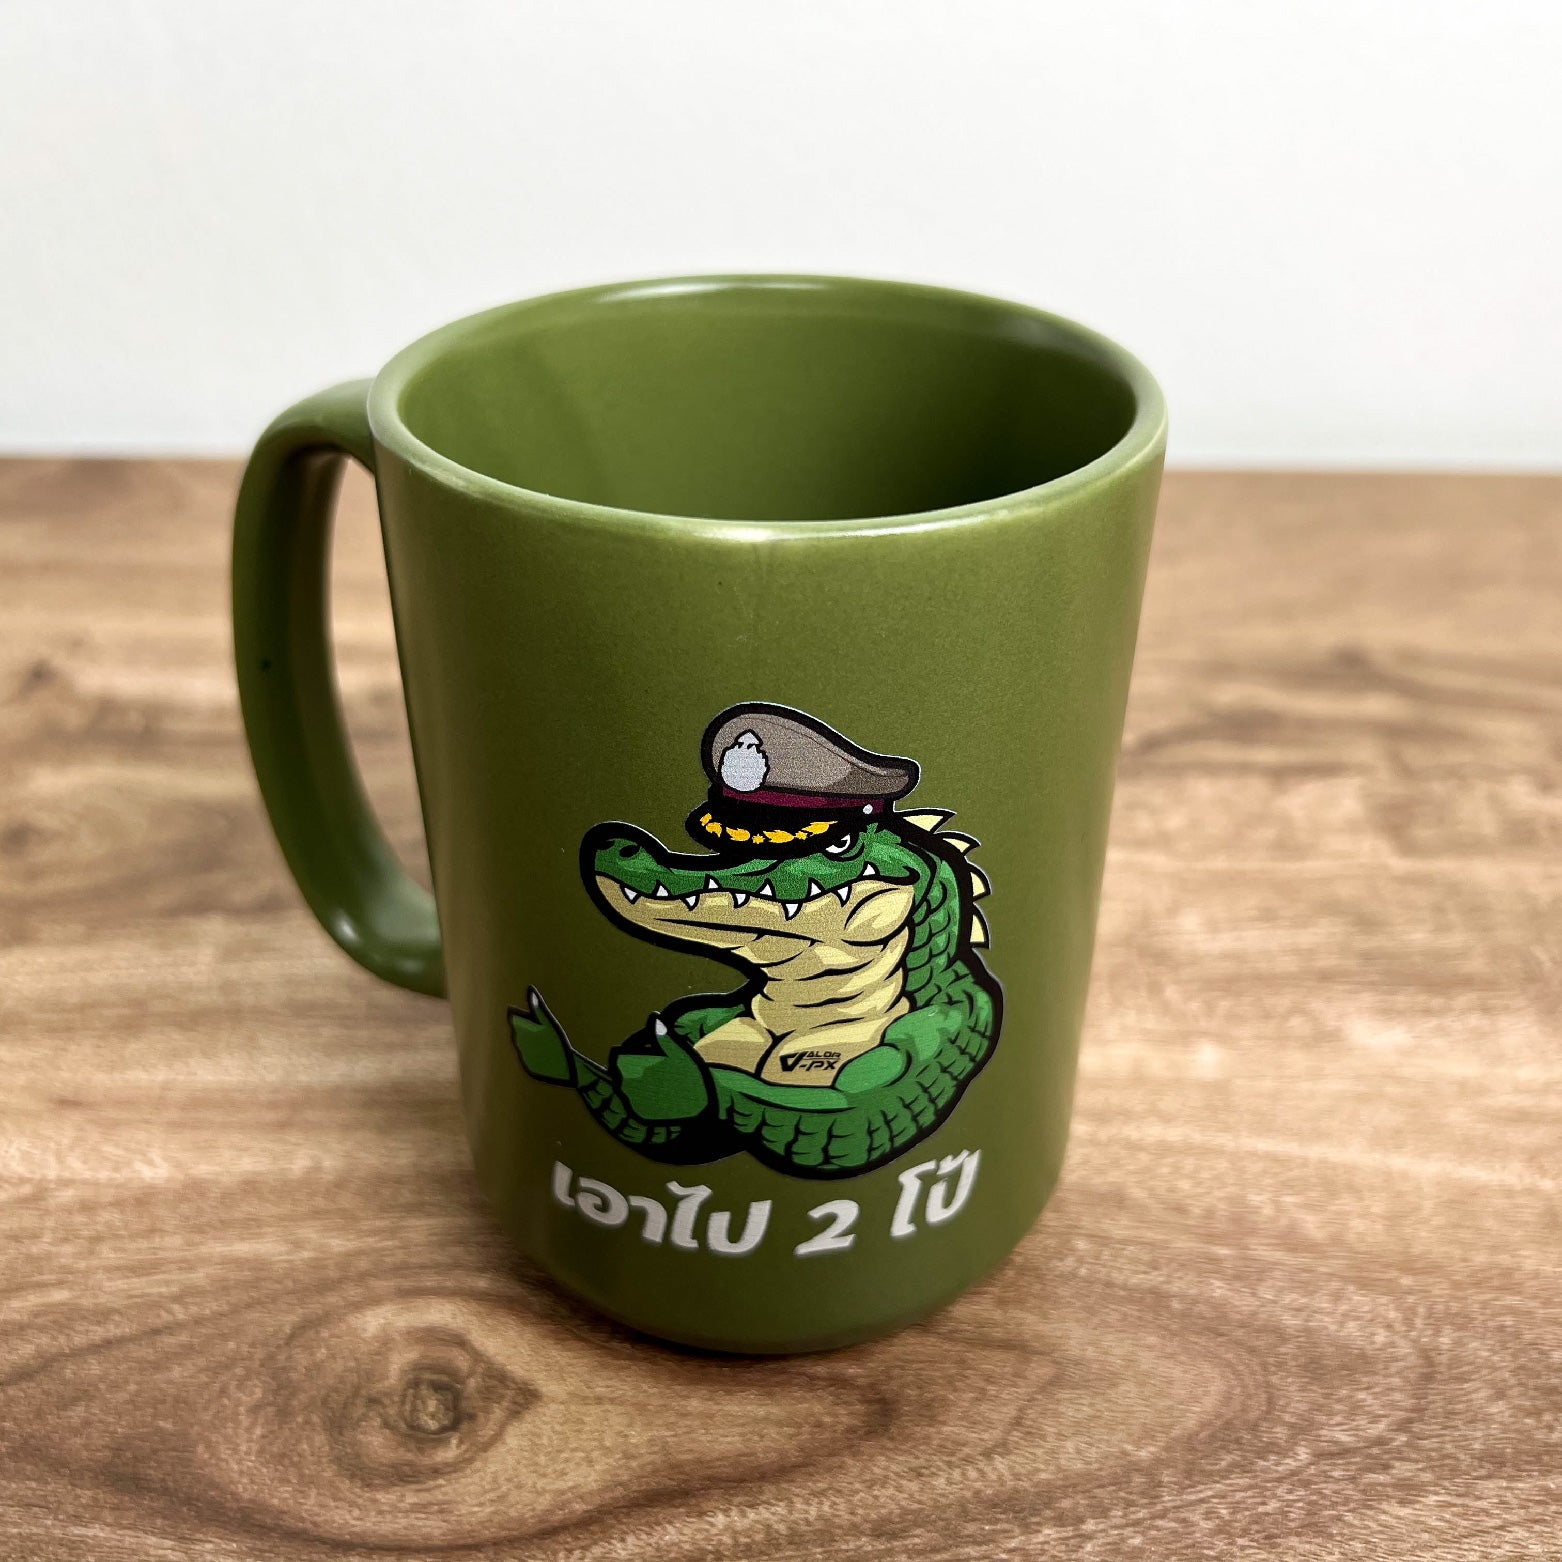 หรวจลาว Ceramic Mug แก้วกาแฟ - เอาไป 2 โป้ [Green]